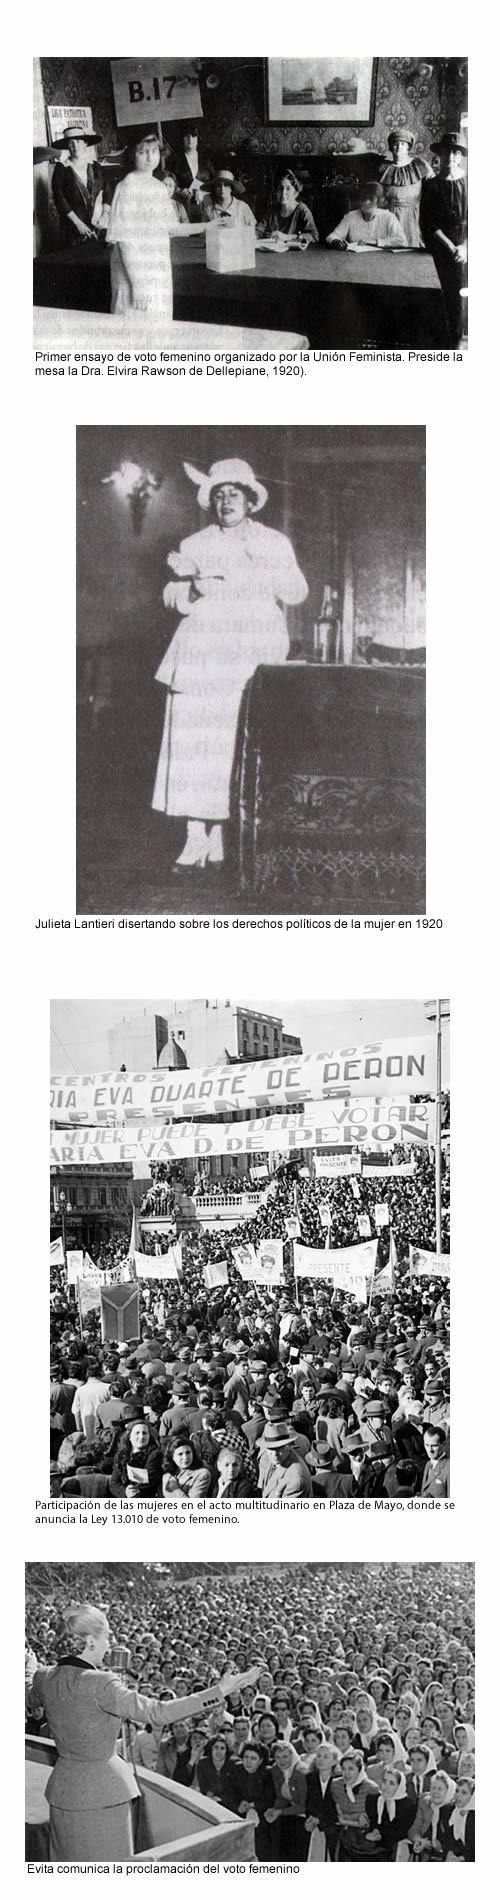 voto femenino argentino en 1947 